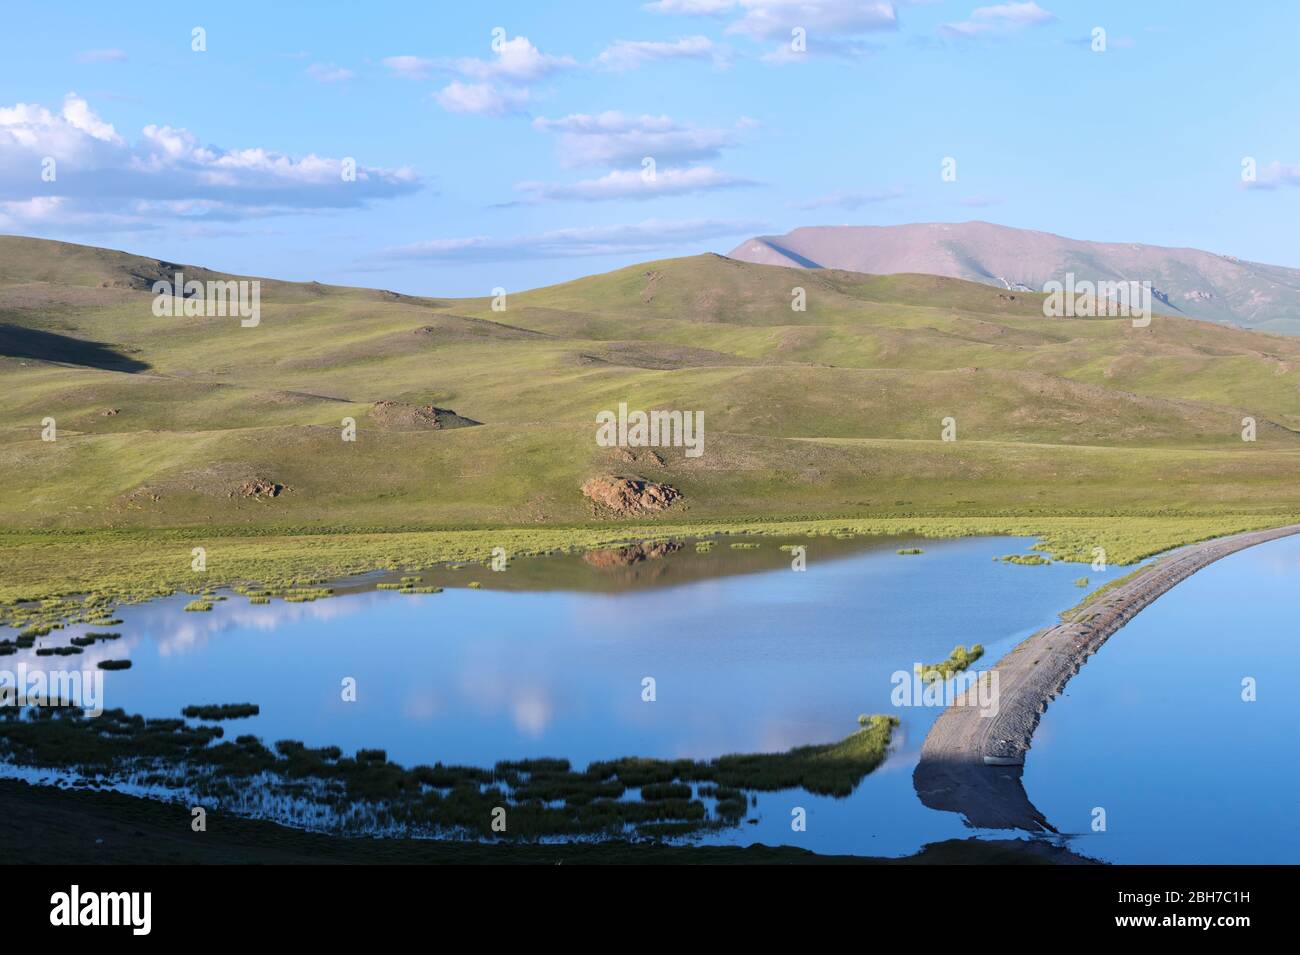 Chanson du lac Kol, province de Naryn, du Kirghizistan, de l'Asie centrale Banque D'Images